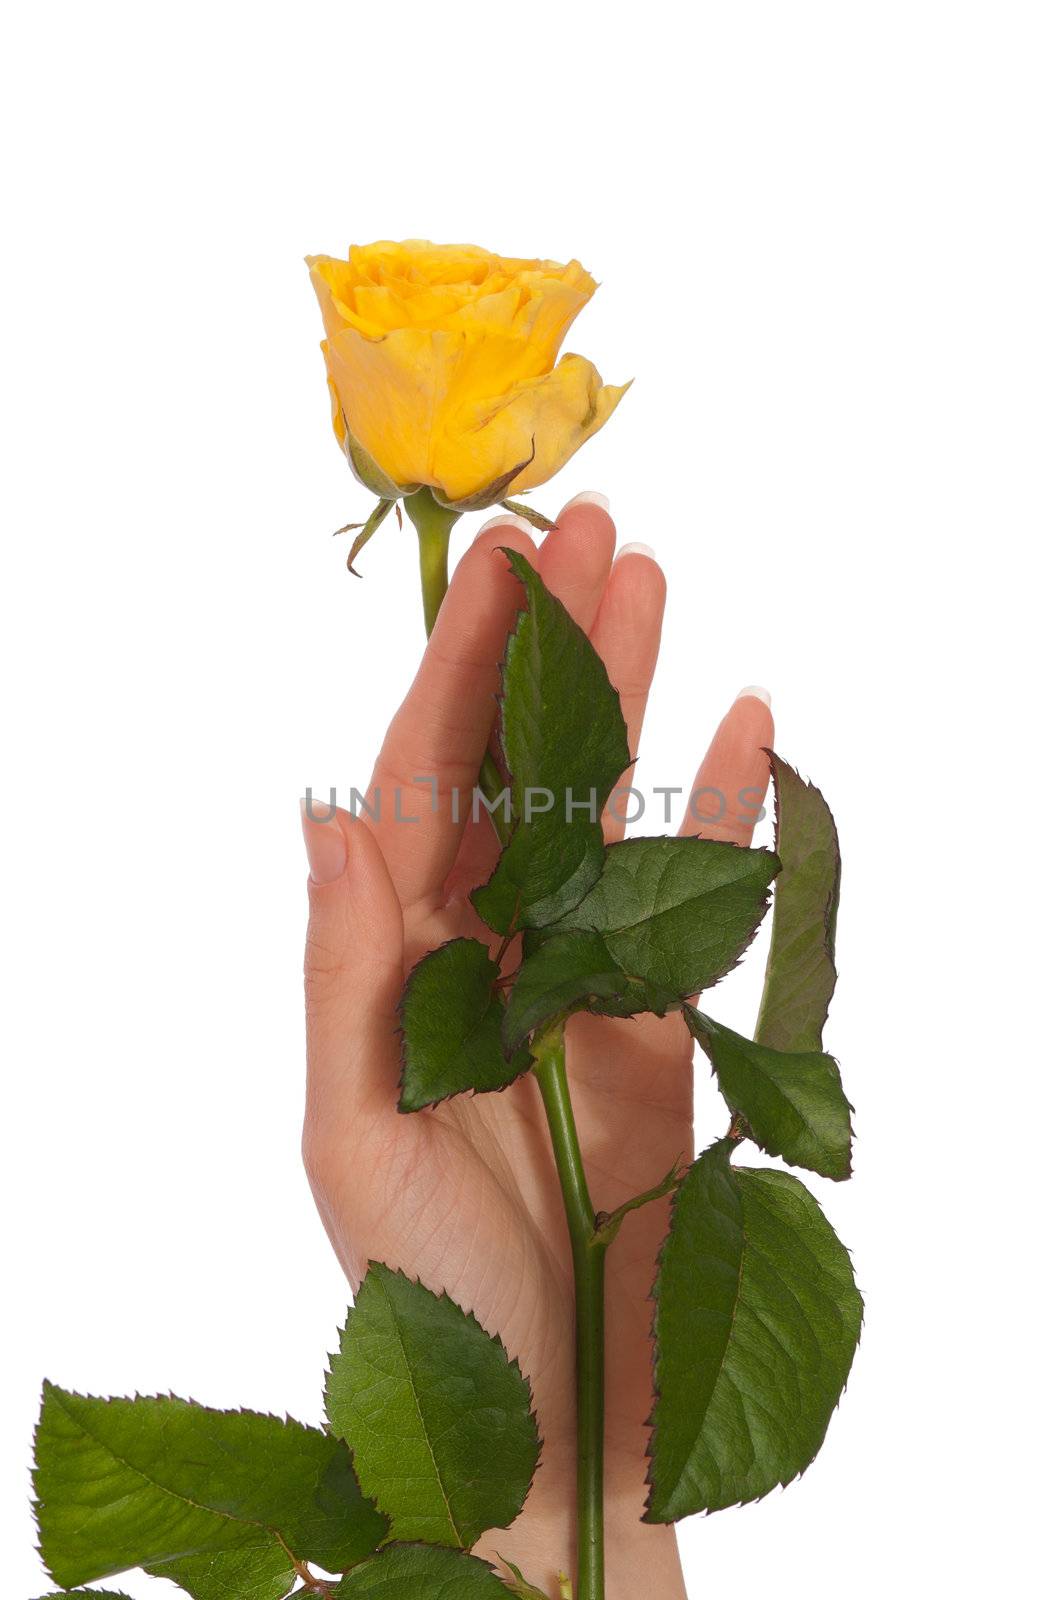 yellow rose by merzavka